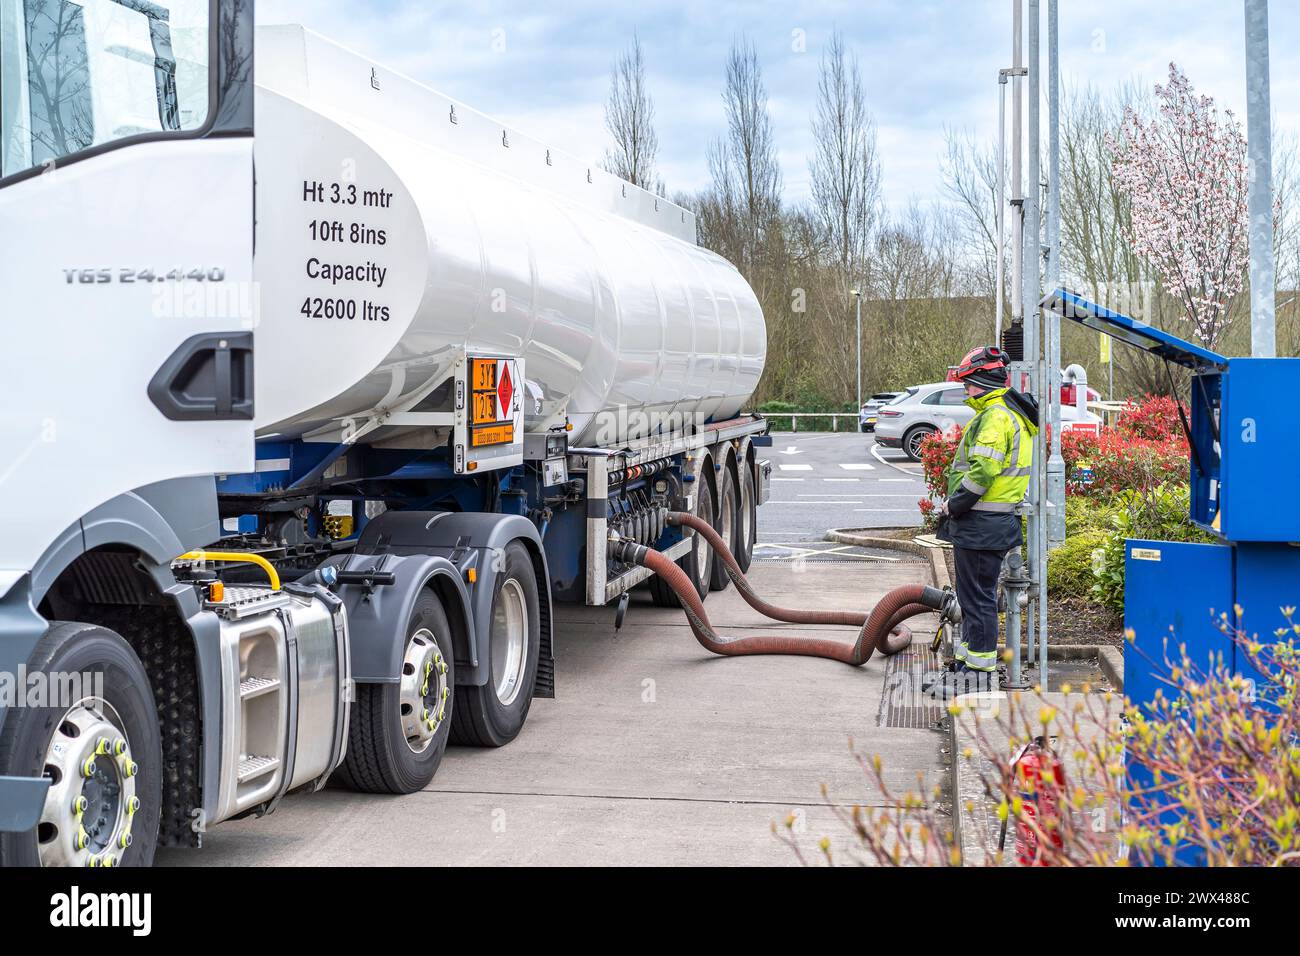 Camion-citerne remplissant les réservoirs de carburant sur la piste de la station-service du Royaume-Uni. Les tuyaux sont connectés, le carburant est pompé alors que le conducteur attend la fin de la livraison. Banque D'Images